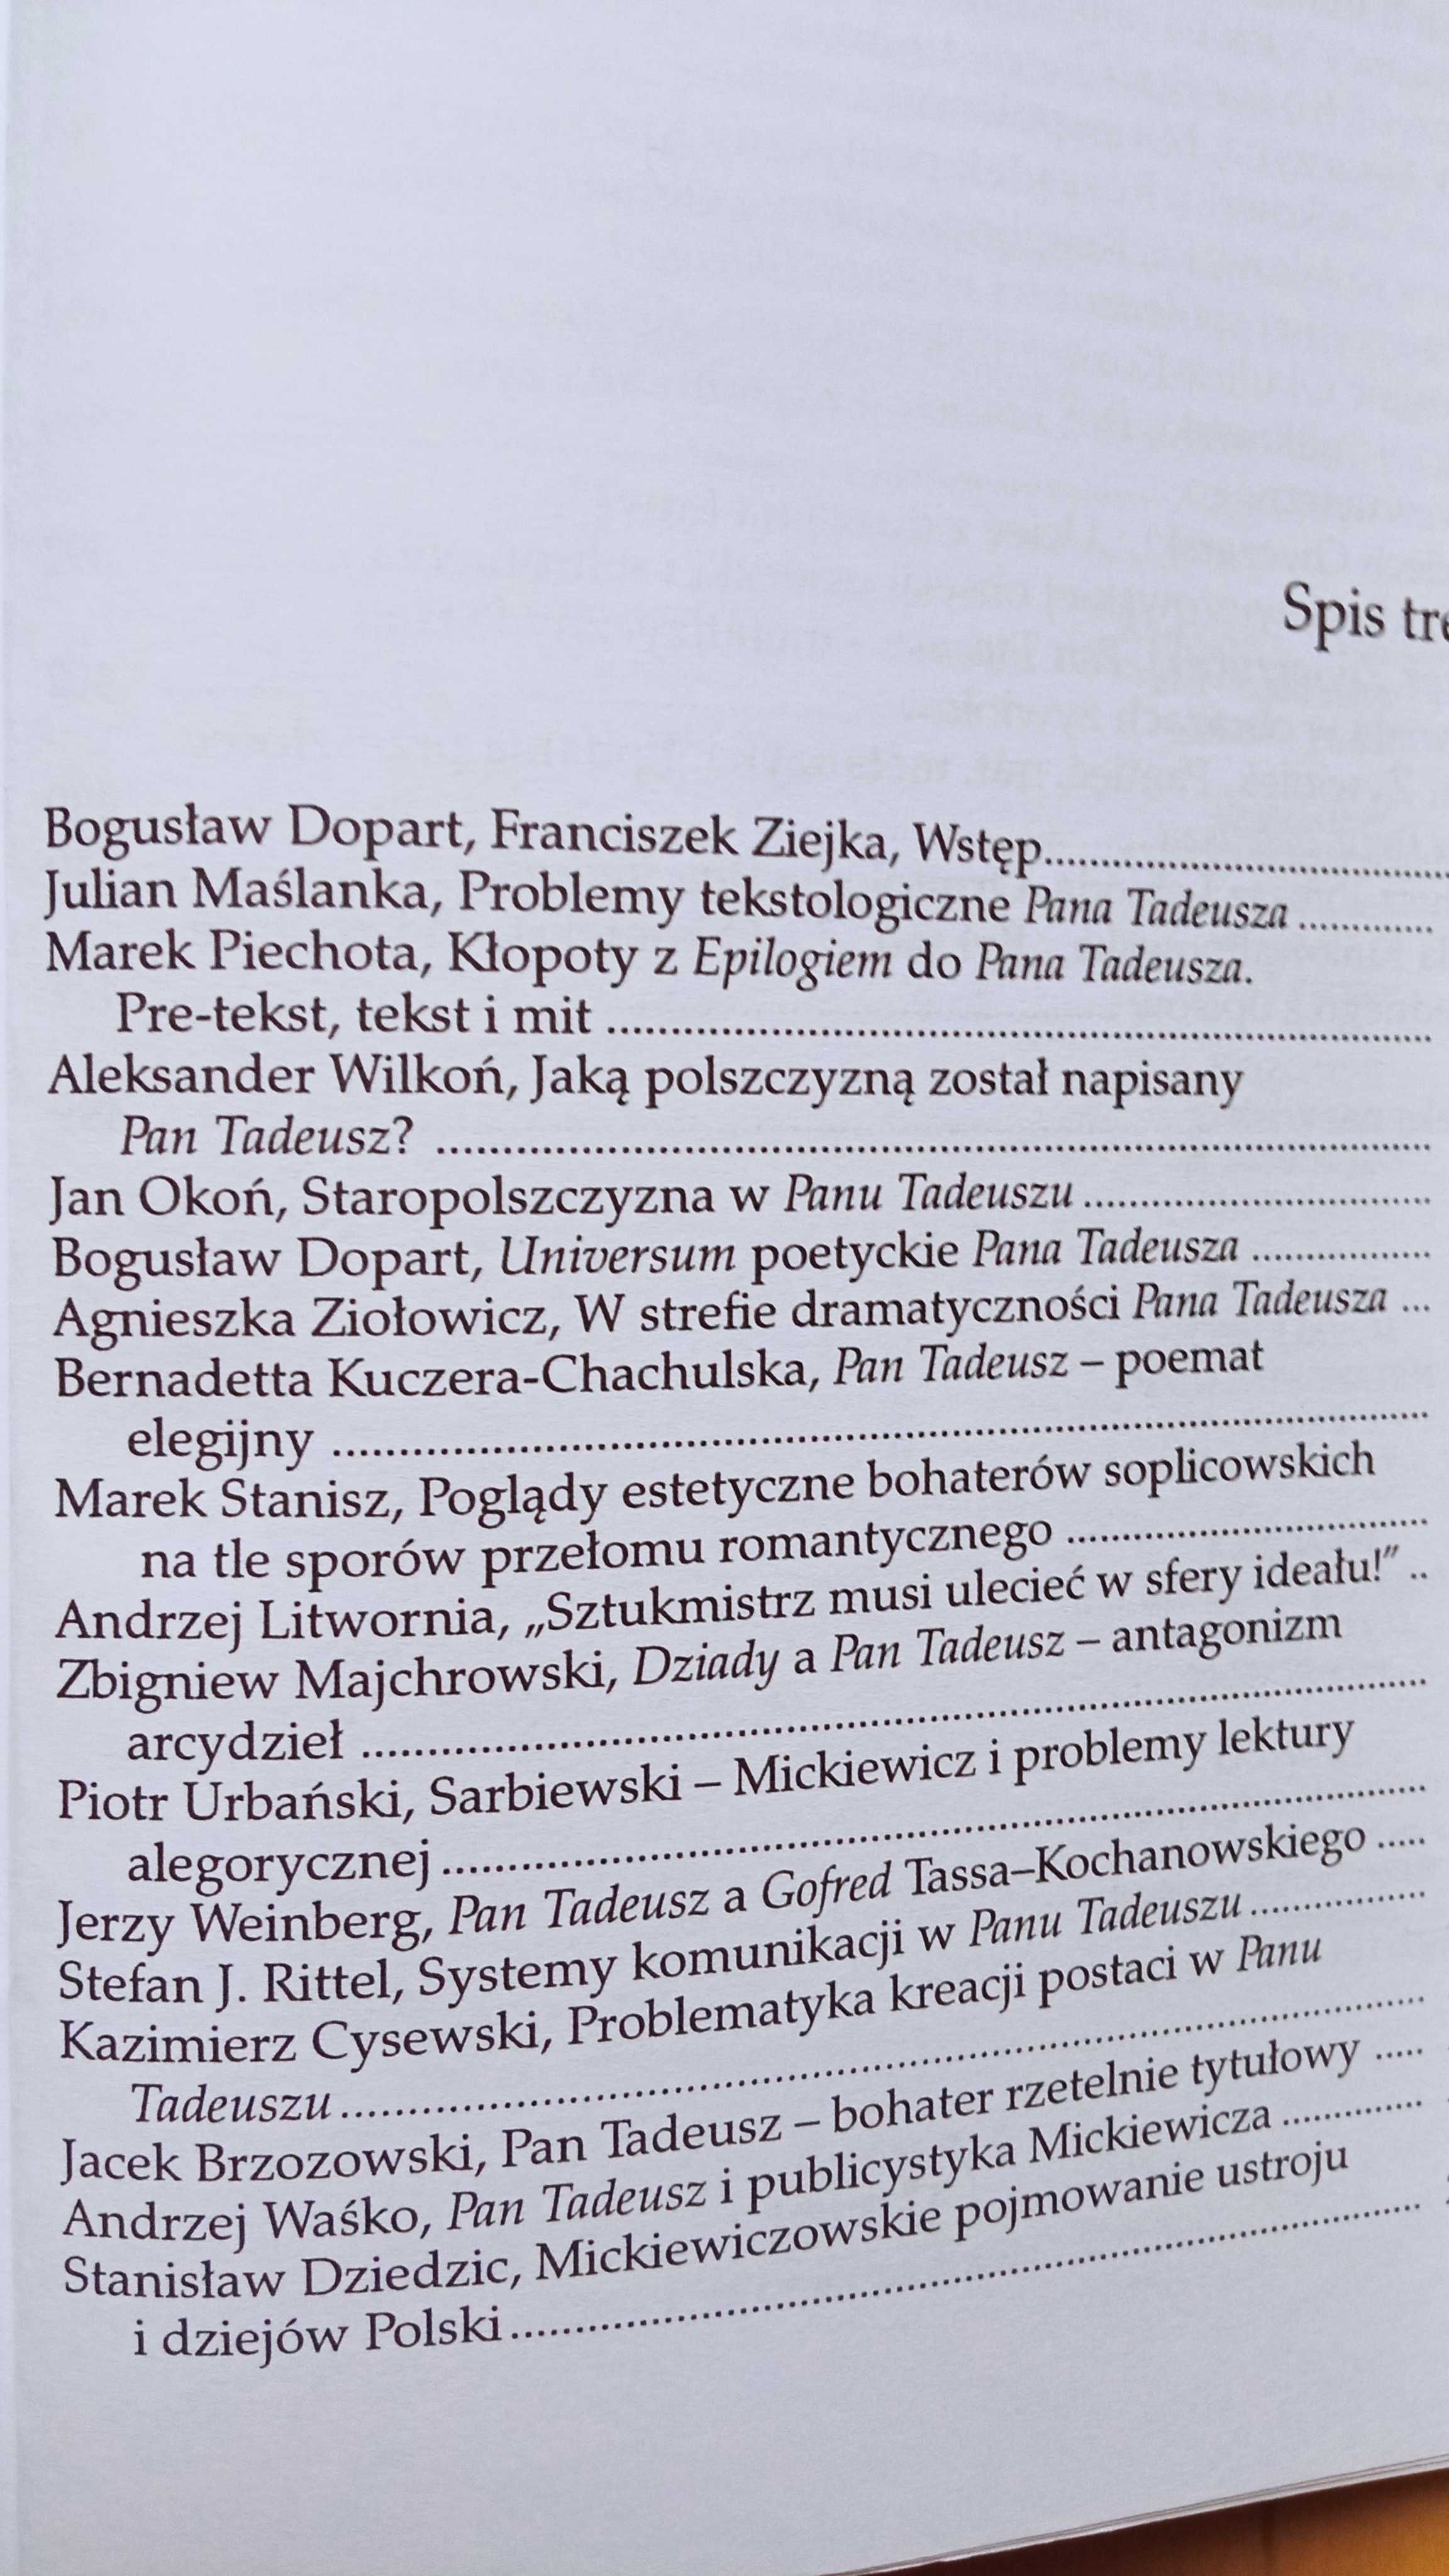 Pan Tadeusz" i jego dziedzictwo: poemat, red. B. Dopart, F. Ziejka